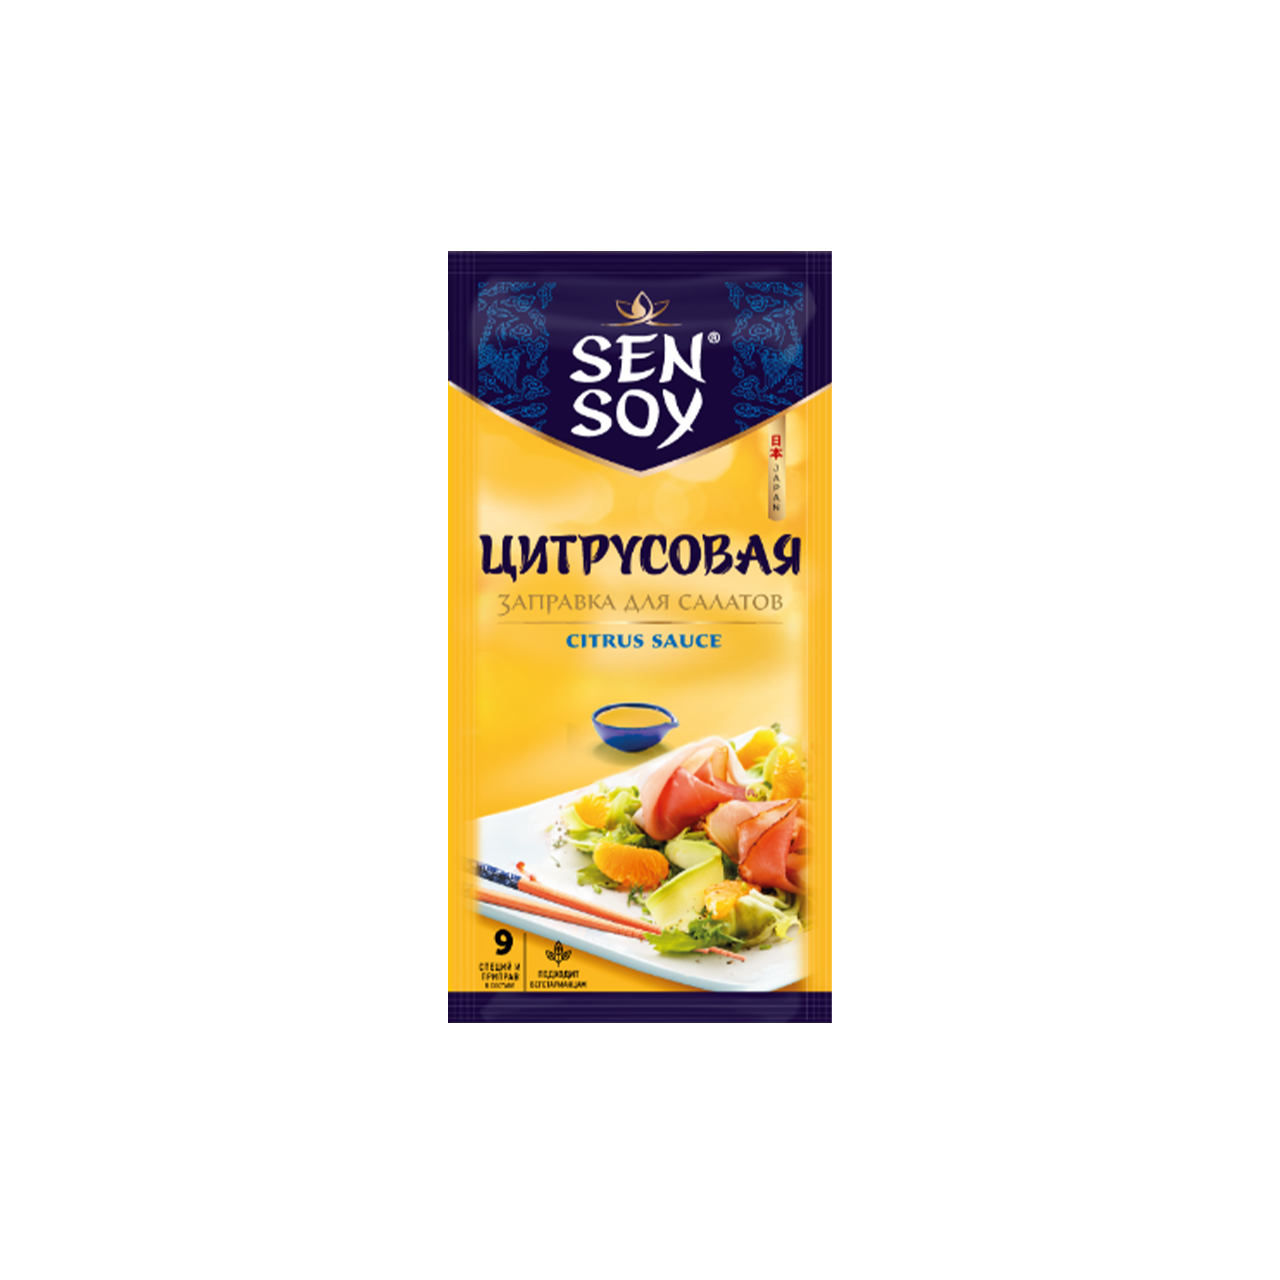 Заправка Сэн Сой для салатов цитрусовая премиум 40 г пакет